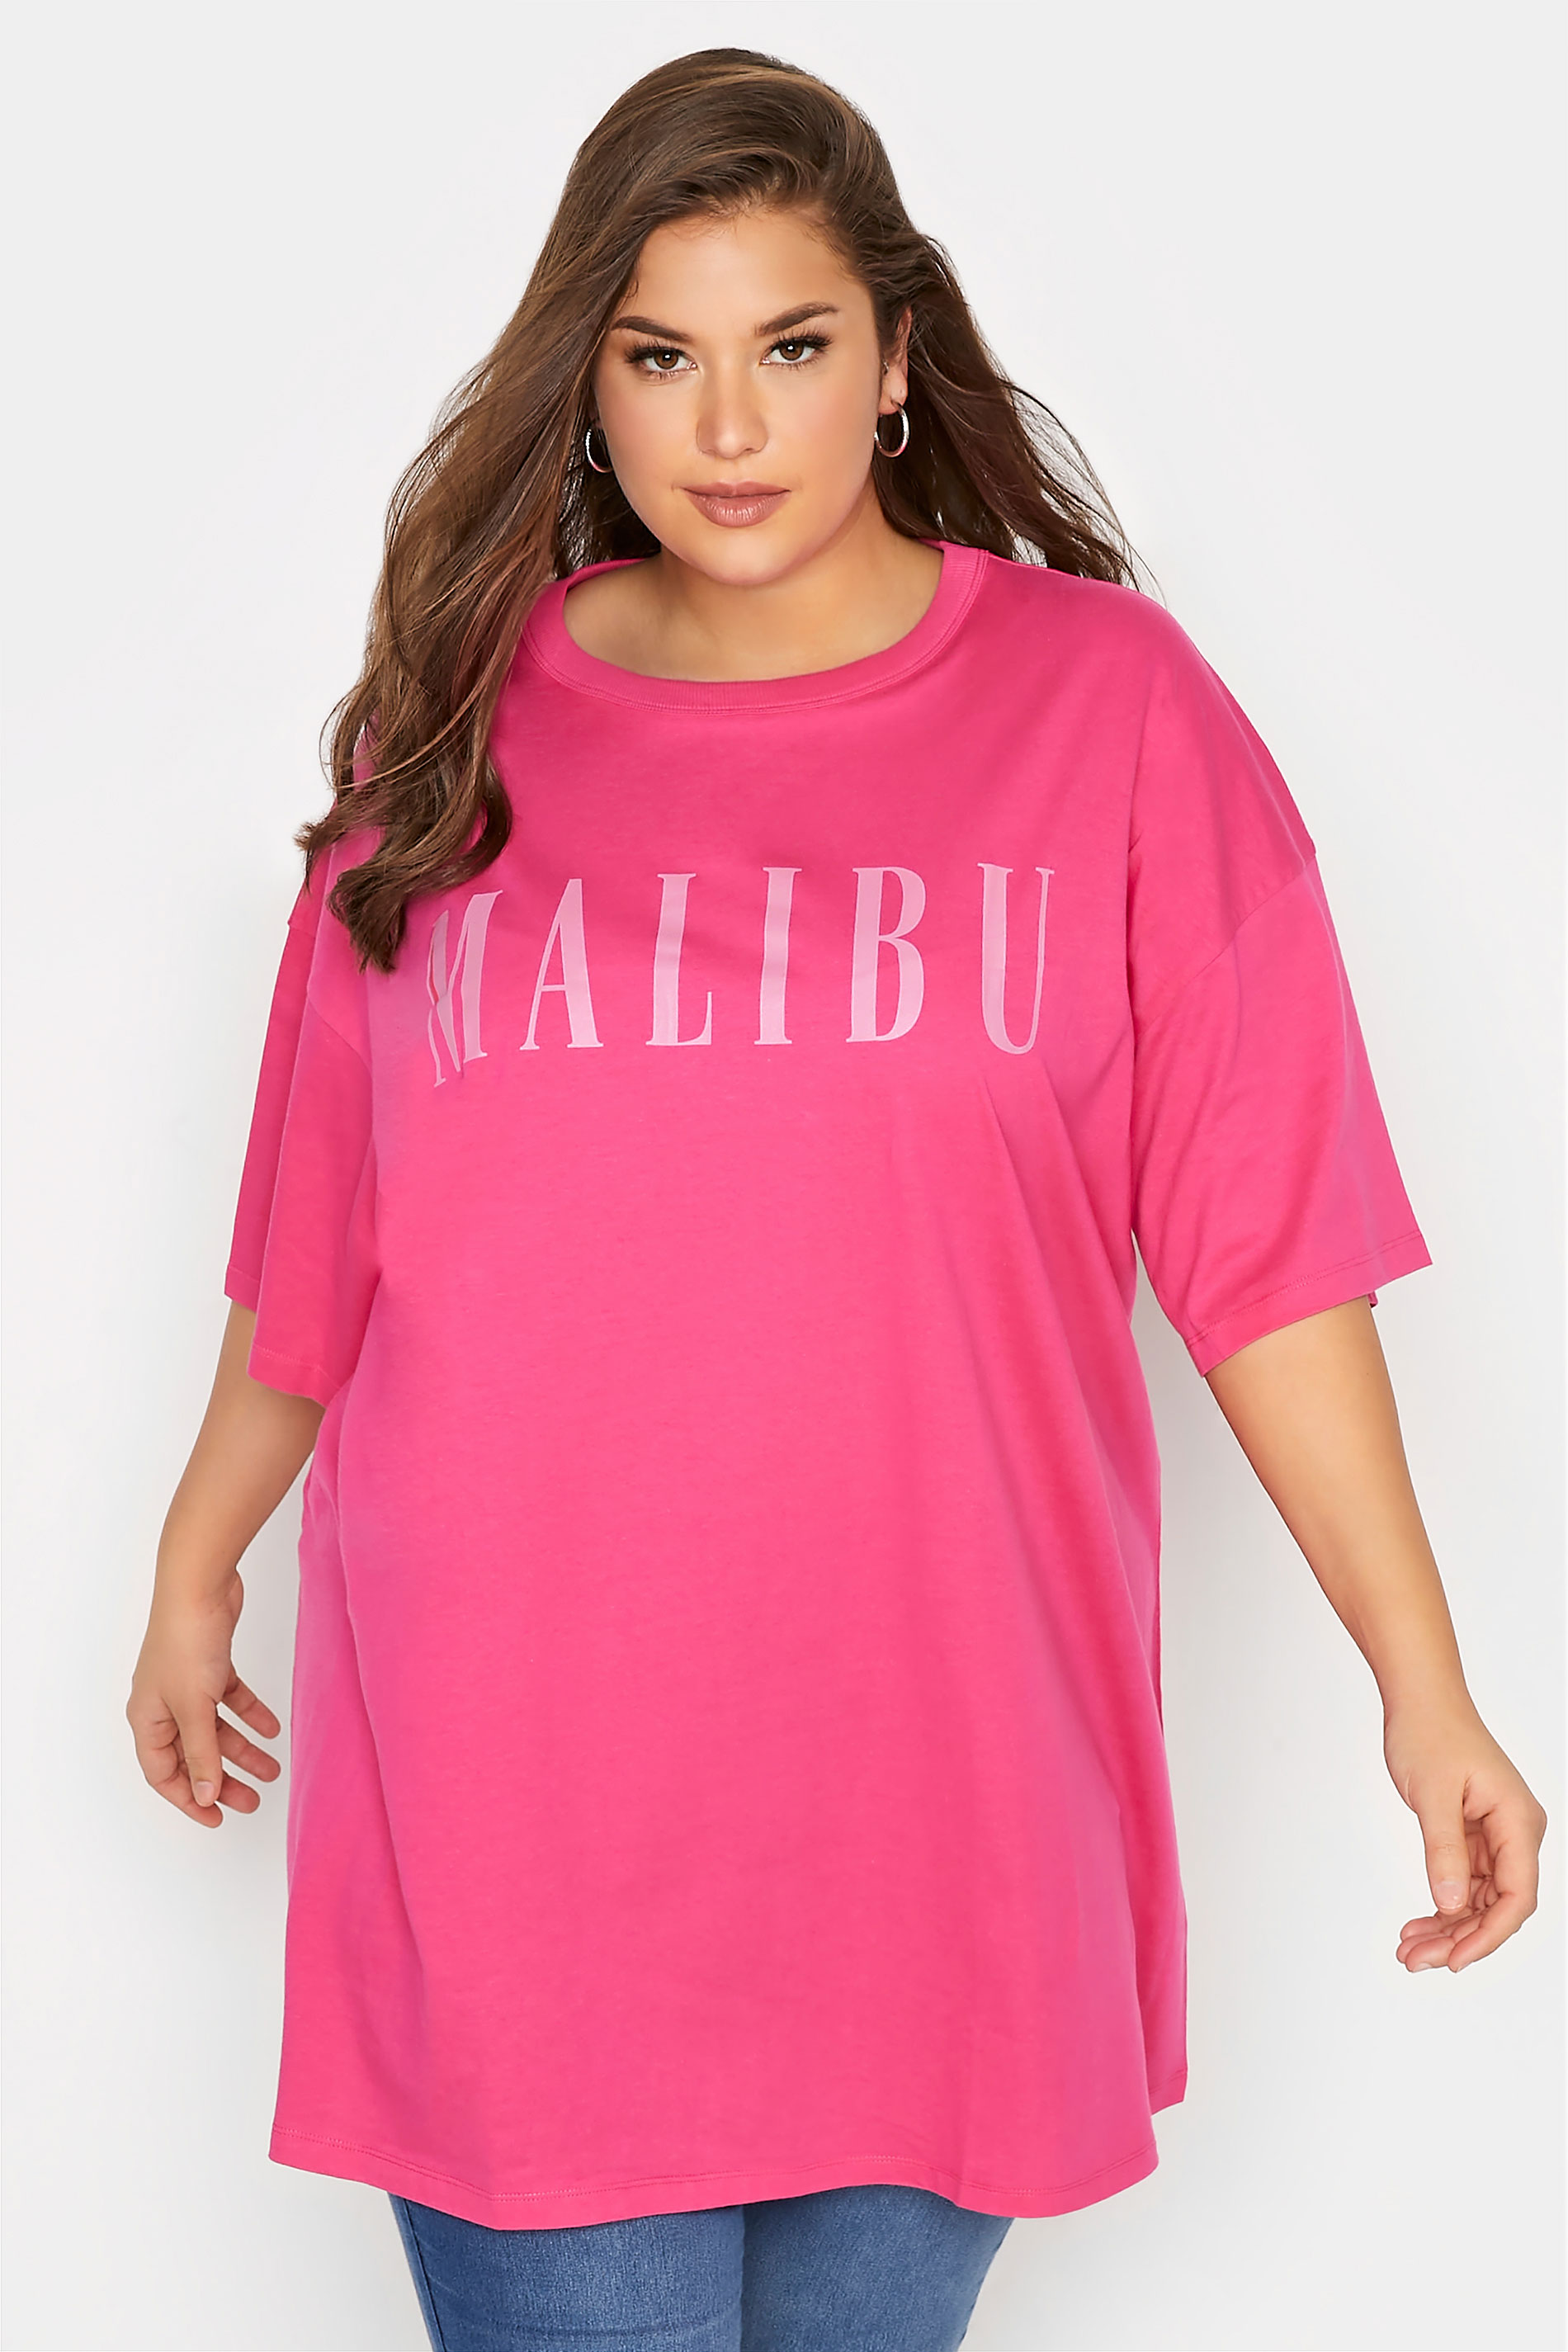 Grande taille  Tops Grande taille  Tops à Slogans | Tunique Rose Flashy 'Malibu' - XF58014